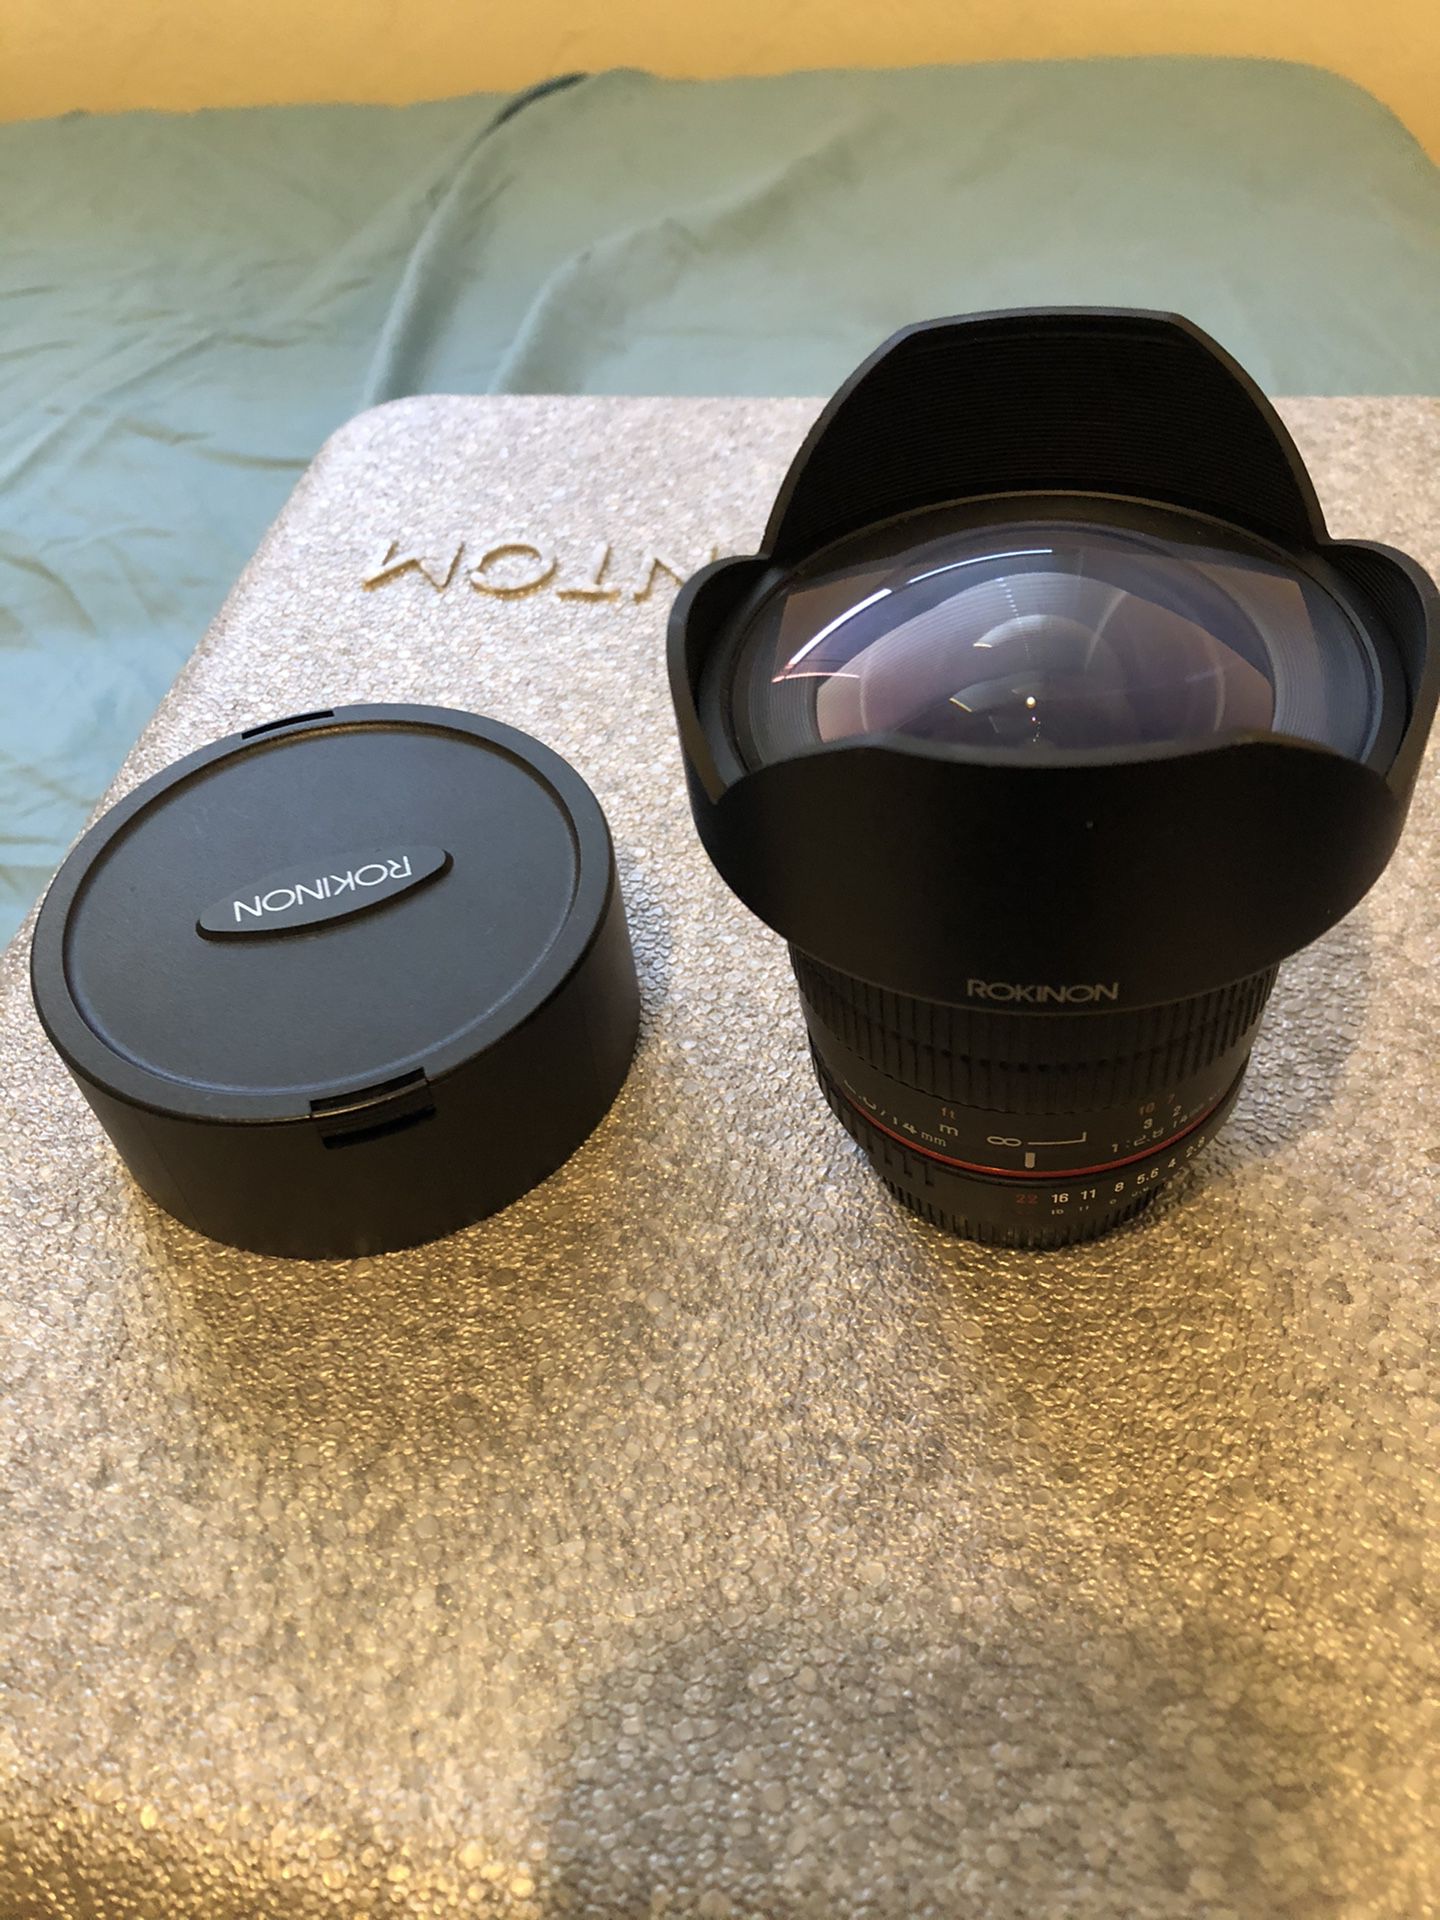 Rokinon 14mm wide angle lens for Nikon full frame